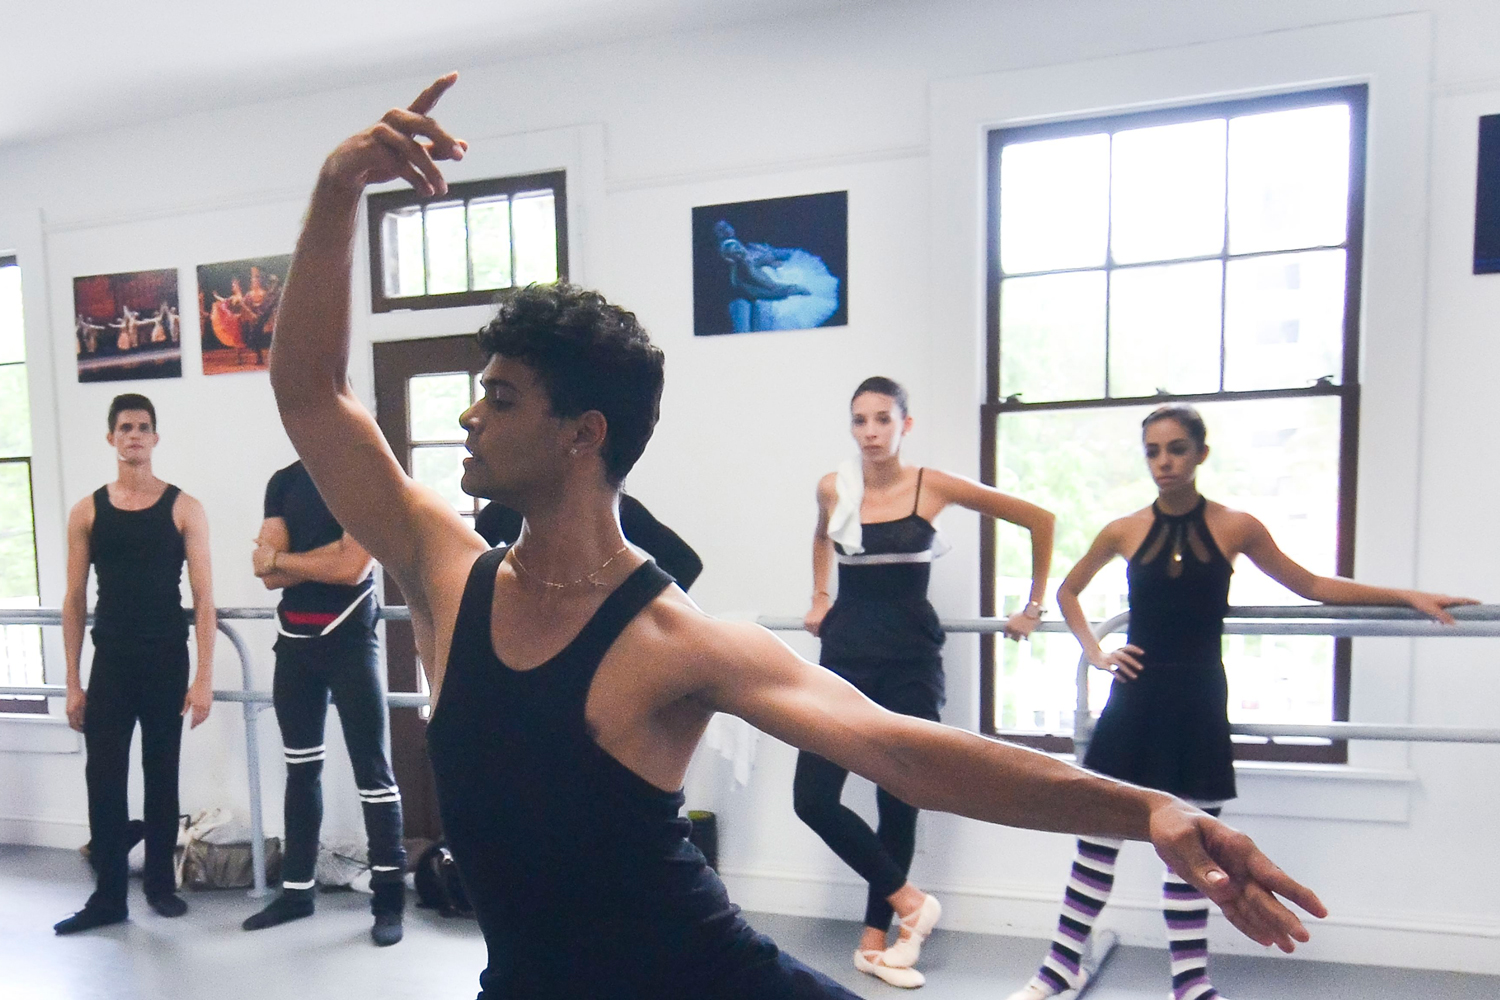 Ocho miembros del Ballet Nacional de Cuba abandonan la gira y piden asilo político en Puerto Rico